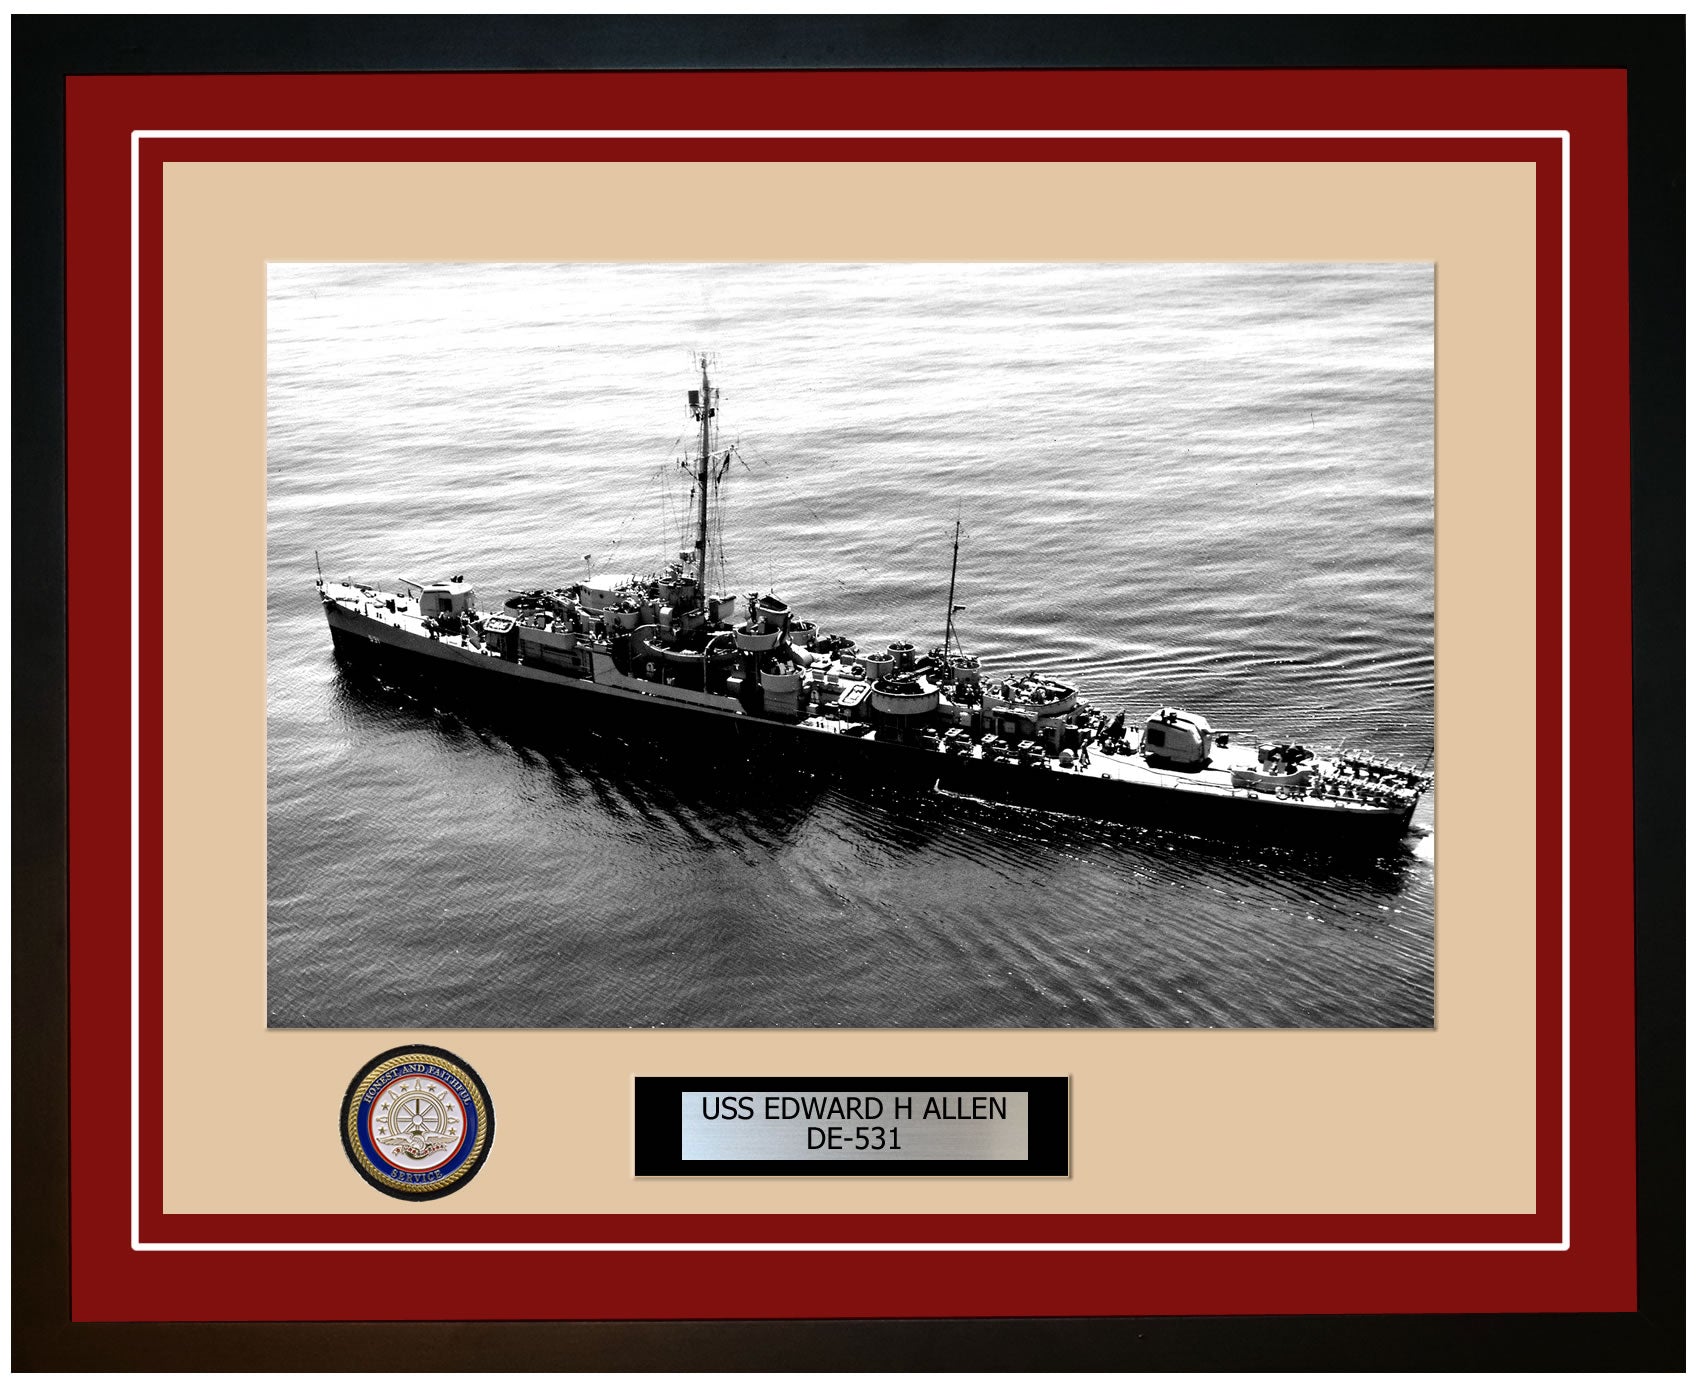 USS Edward H Allen DE-531 Framed Navy Ship Photo Burgundy